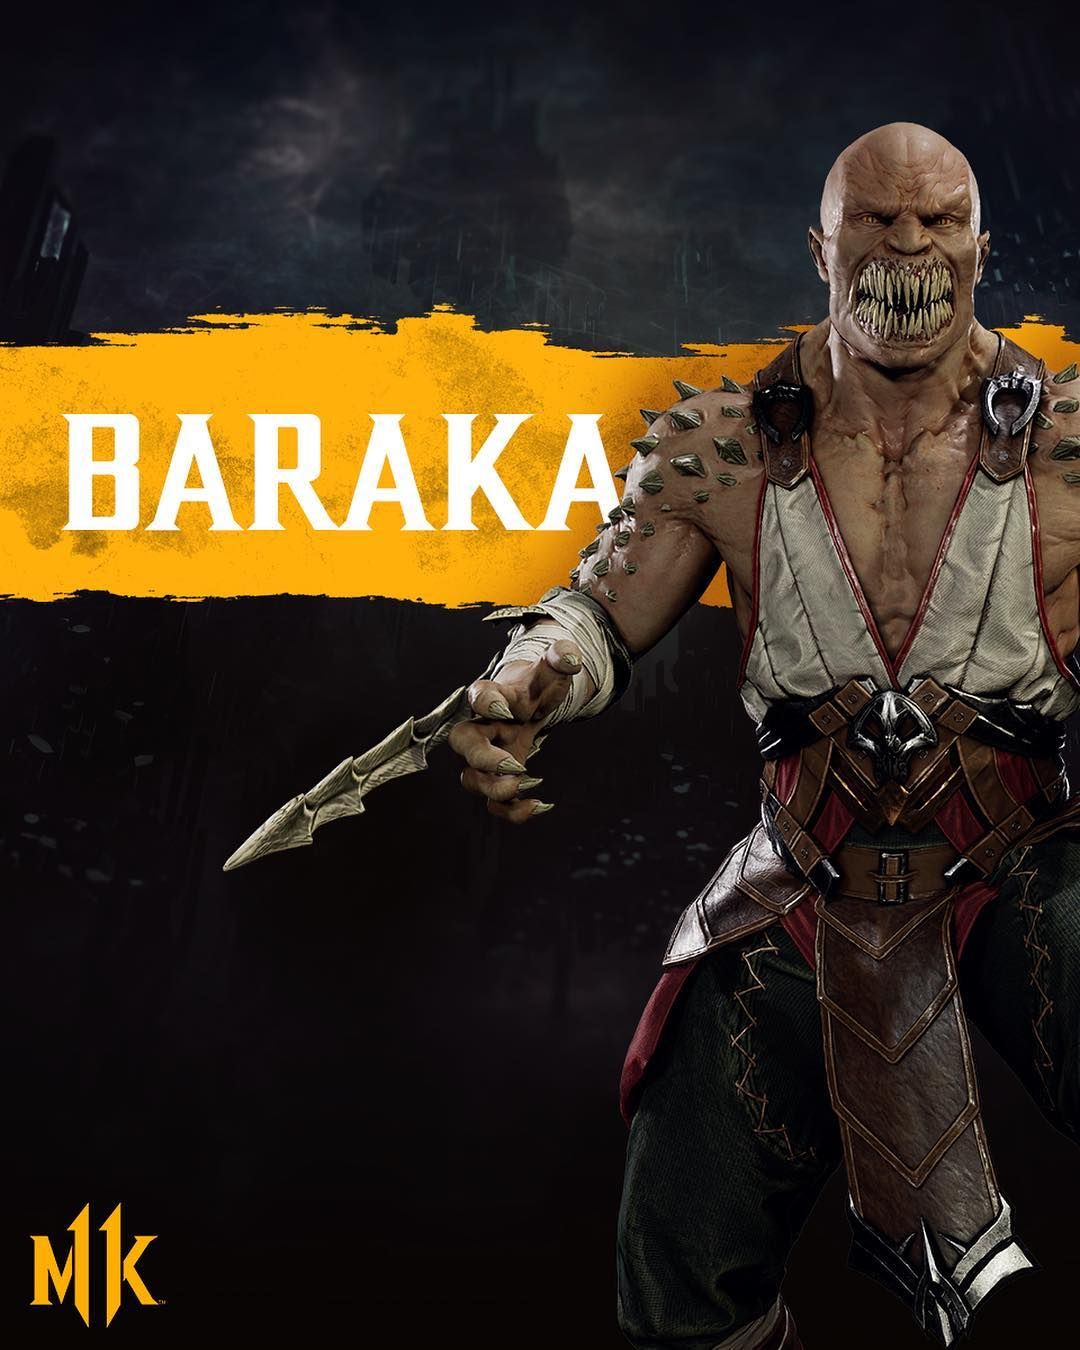 Mortal Kombat Baraka wallpaper by FourthWallEffects  Download on ZEDGE   8768